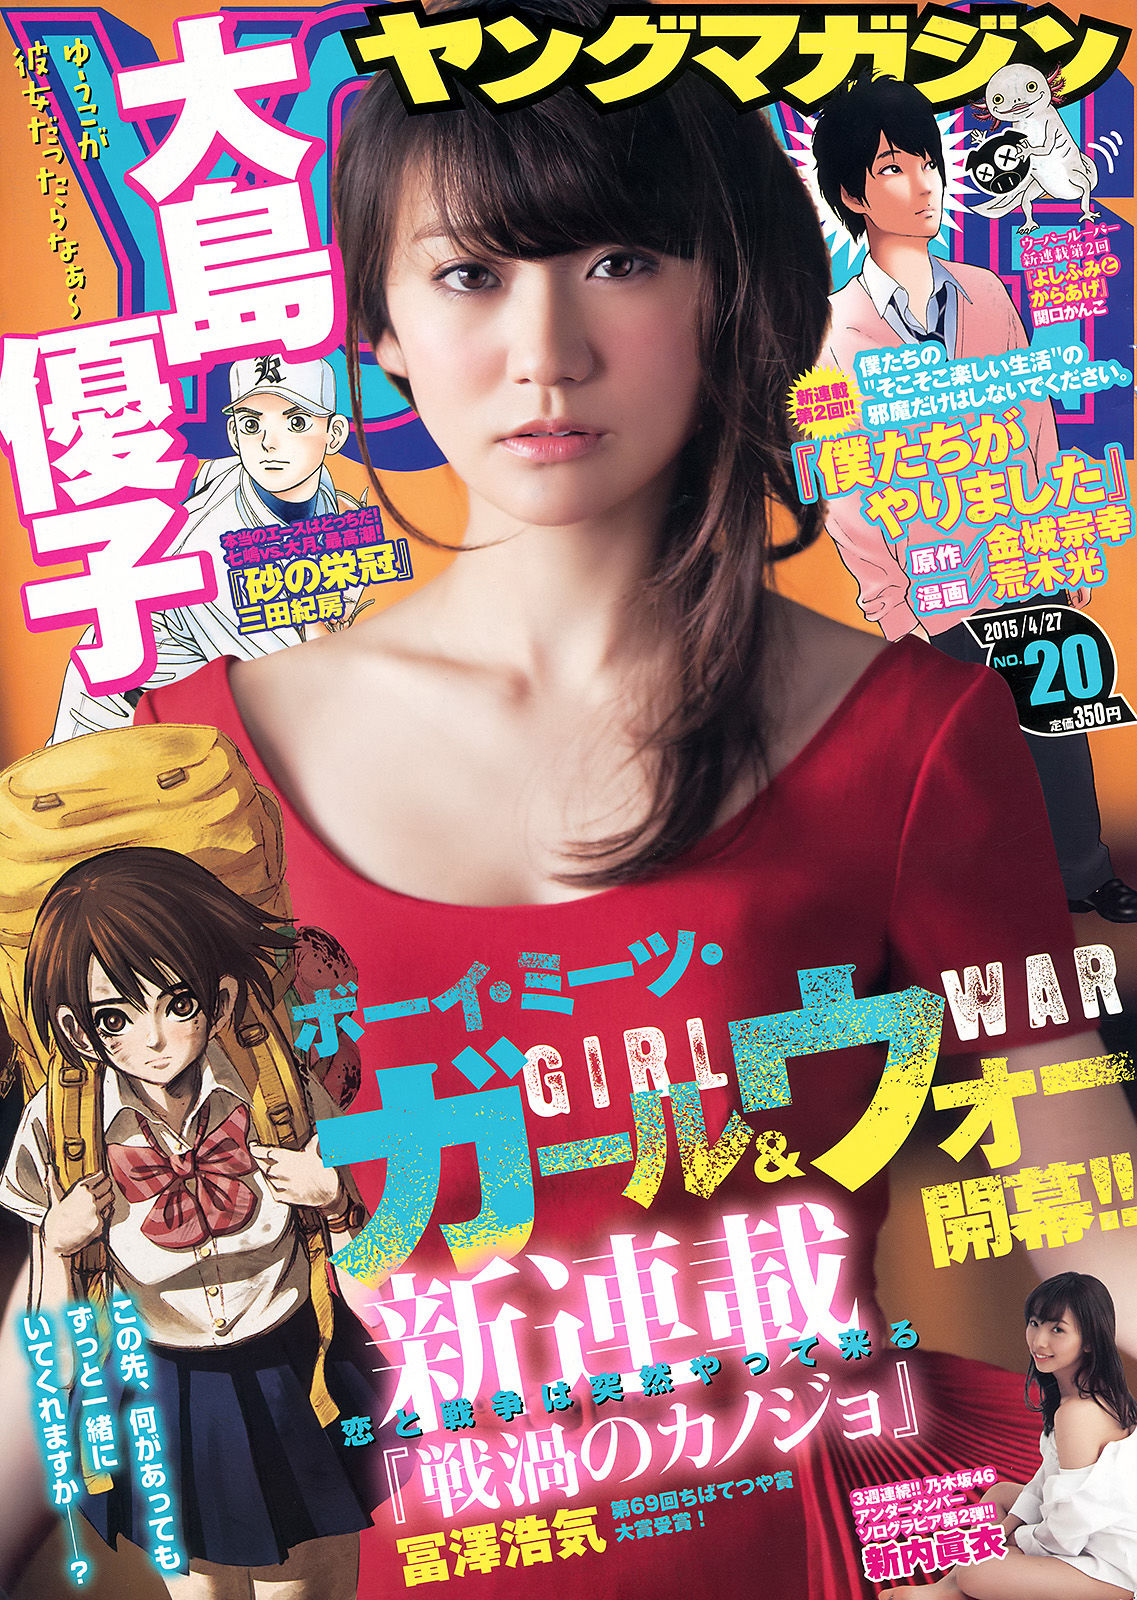 Young magazine. ЮКО Осима.